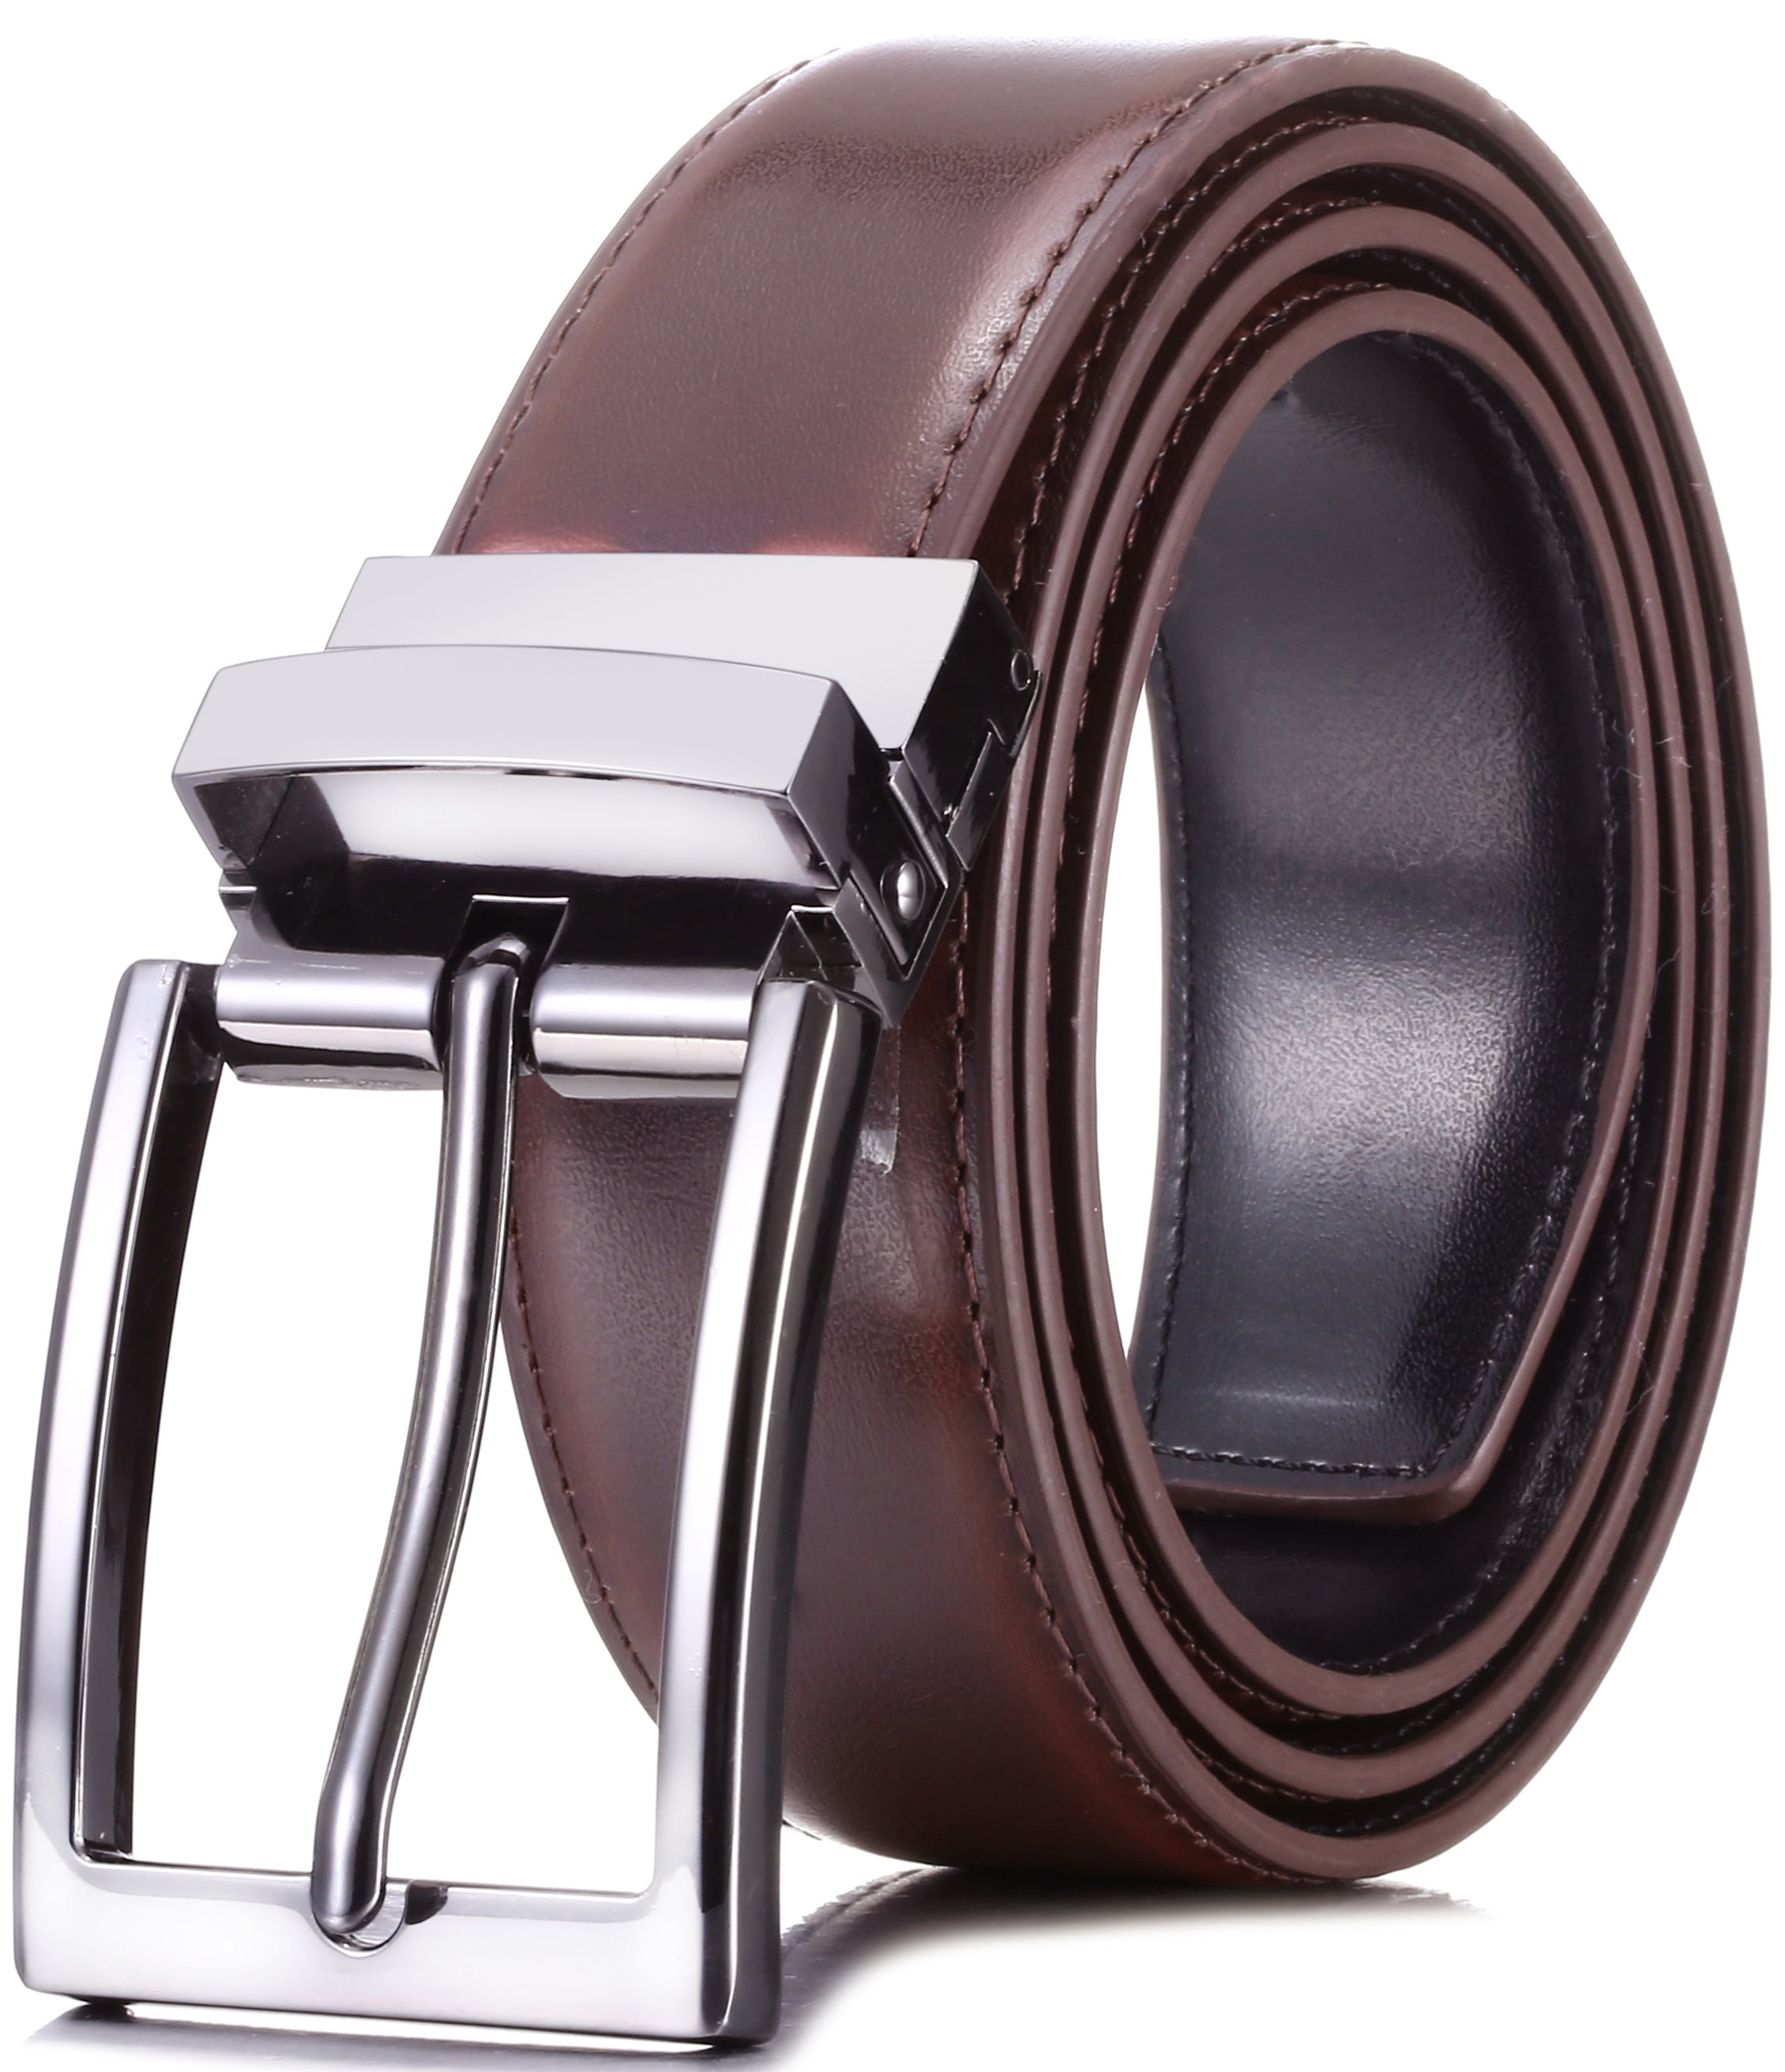 changeable belt buckle belts men's